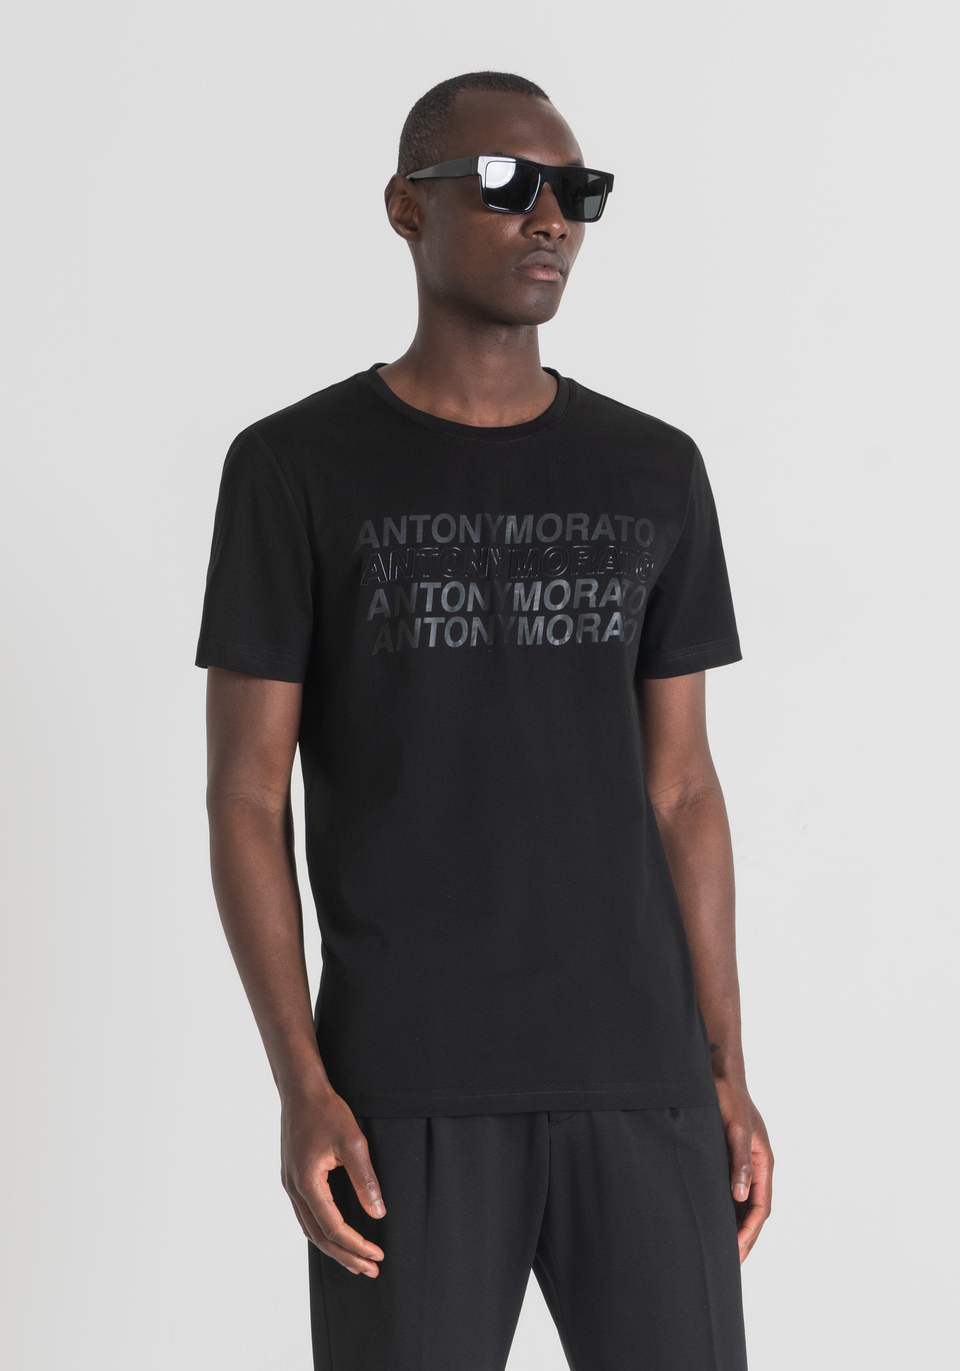 T-SHIRT SLIM FIT AUS WEICHER BAUMWOLLE MIT PRINT - Antony Morato Online Shop